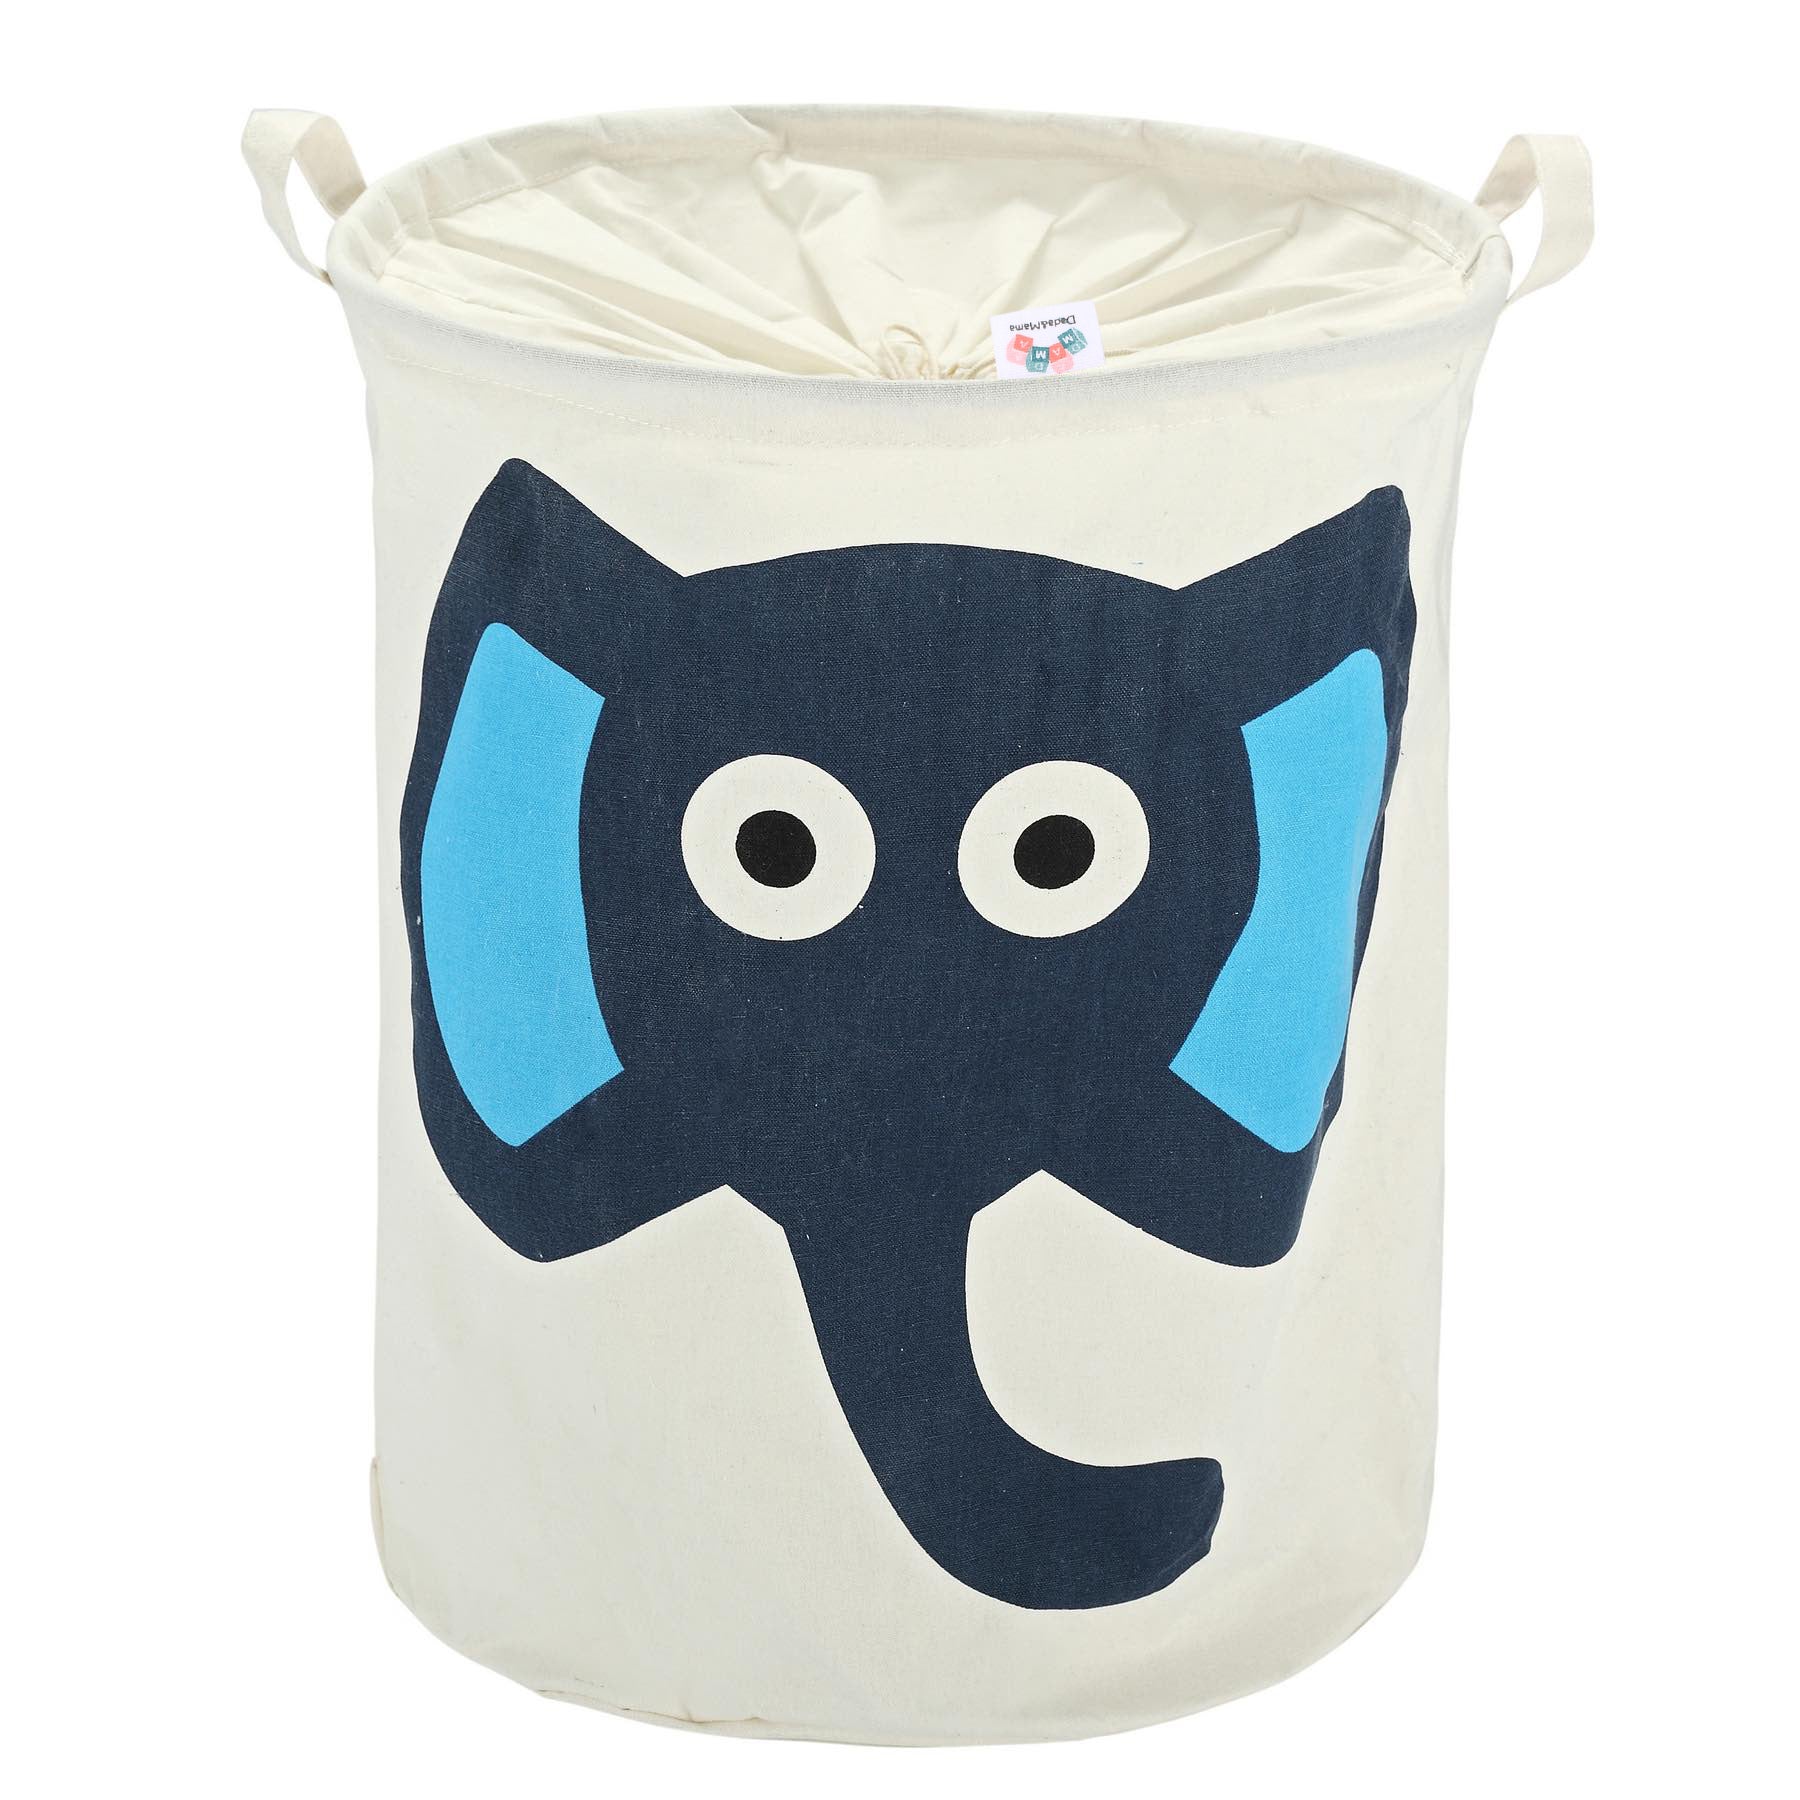 Printed Elephant Baby Laundry Basket